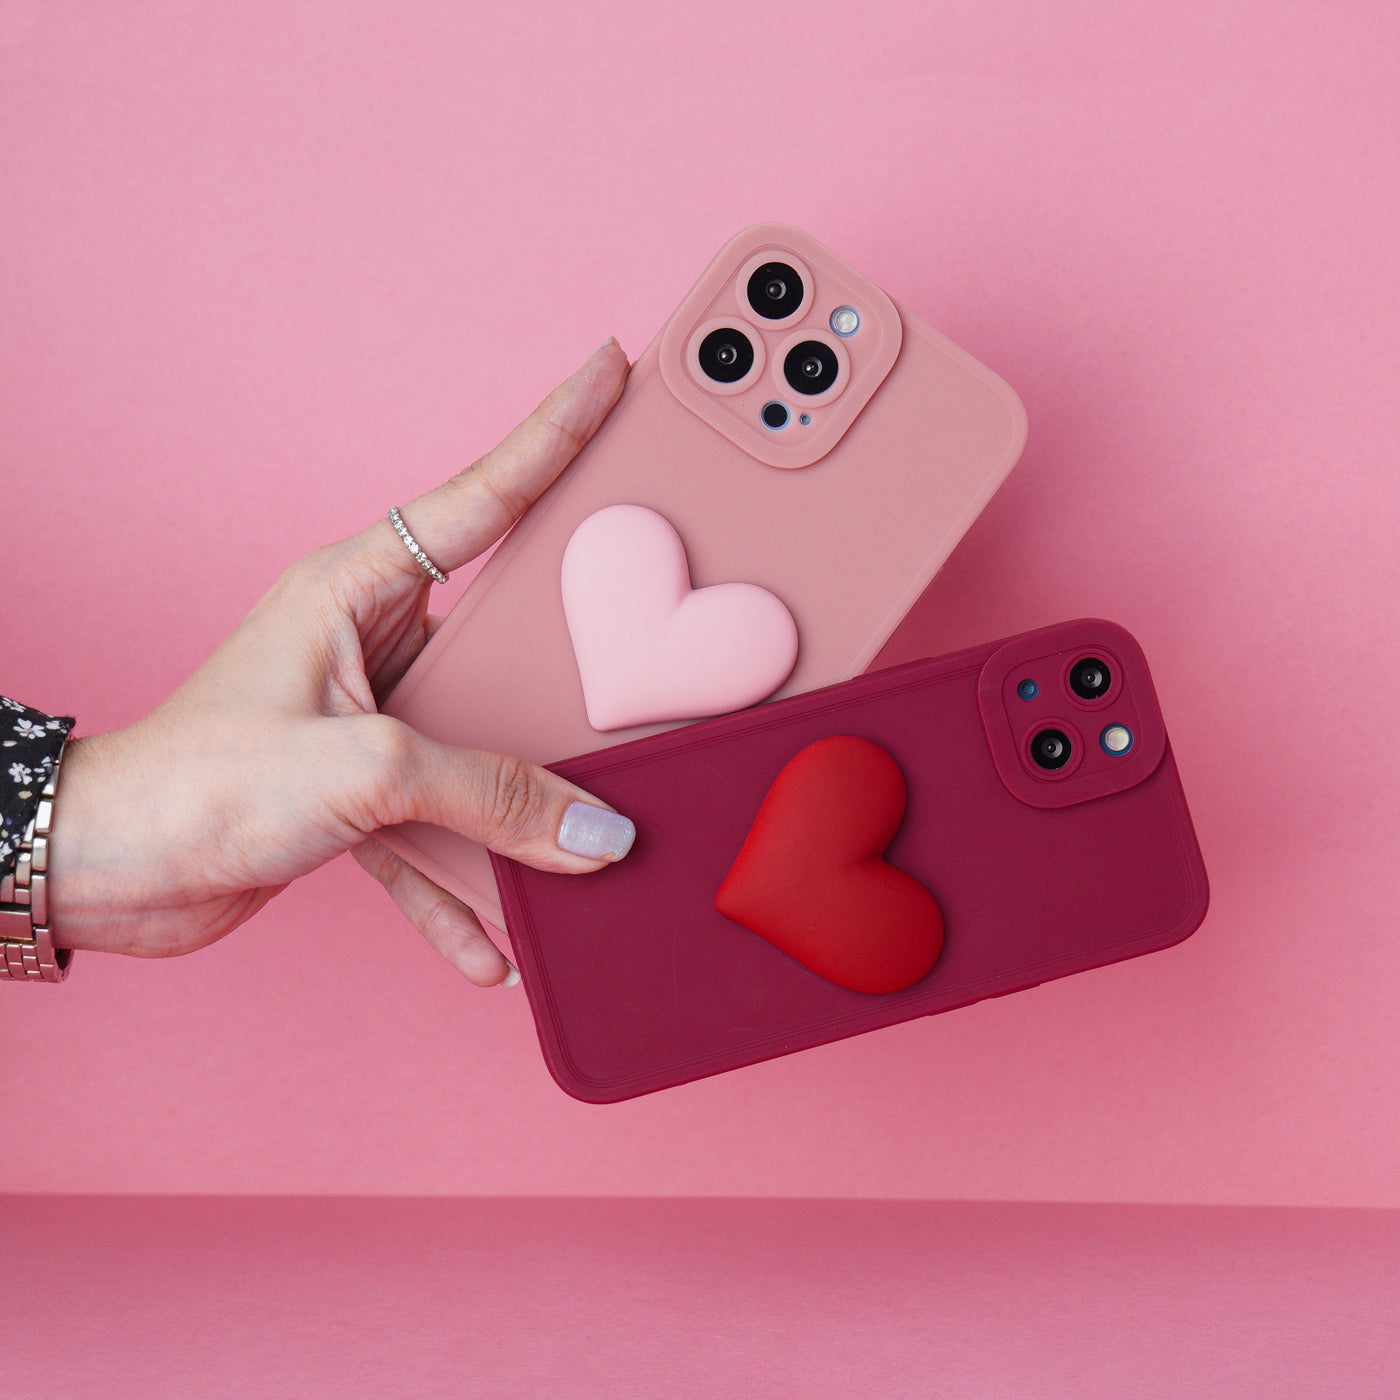 3d Love Heart Soft Phone Case